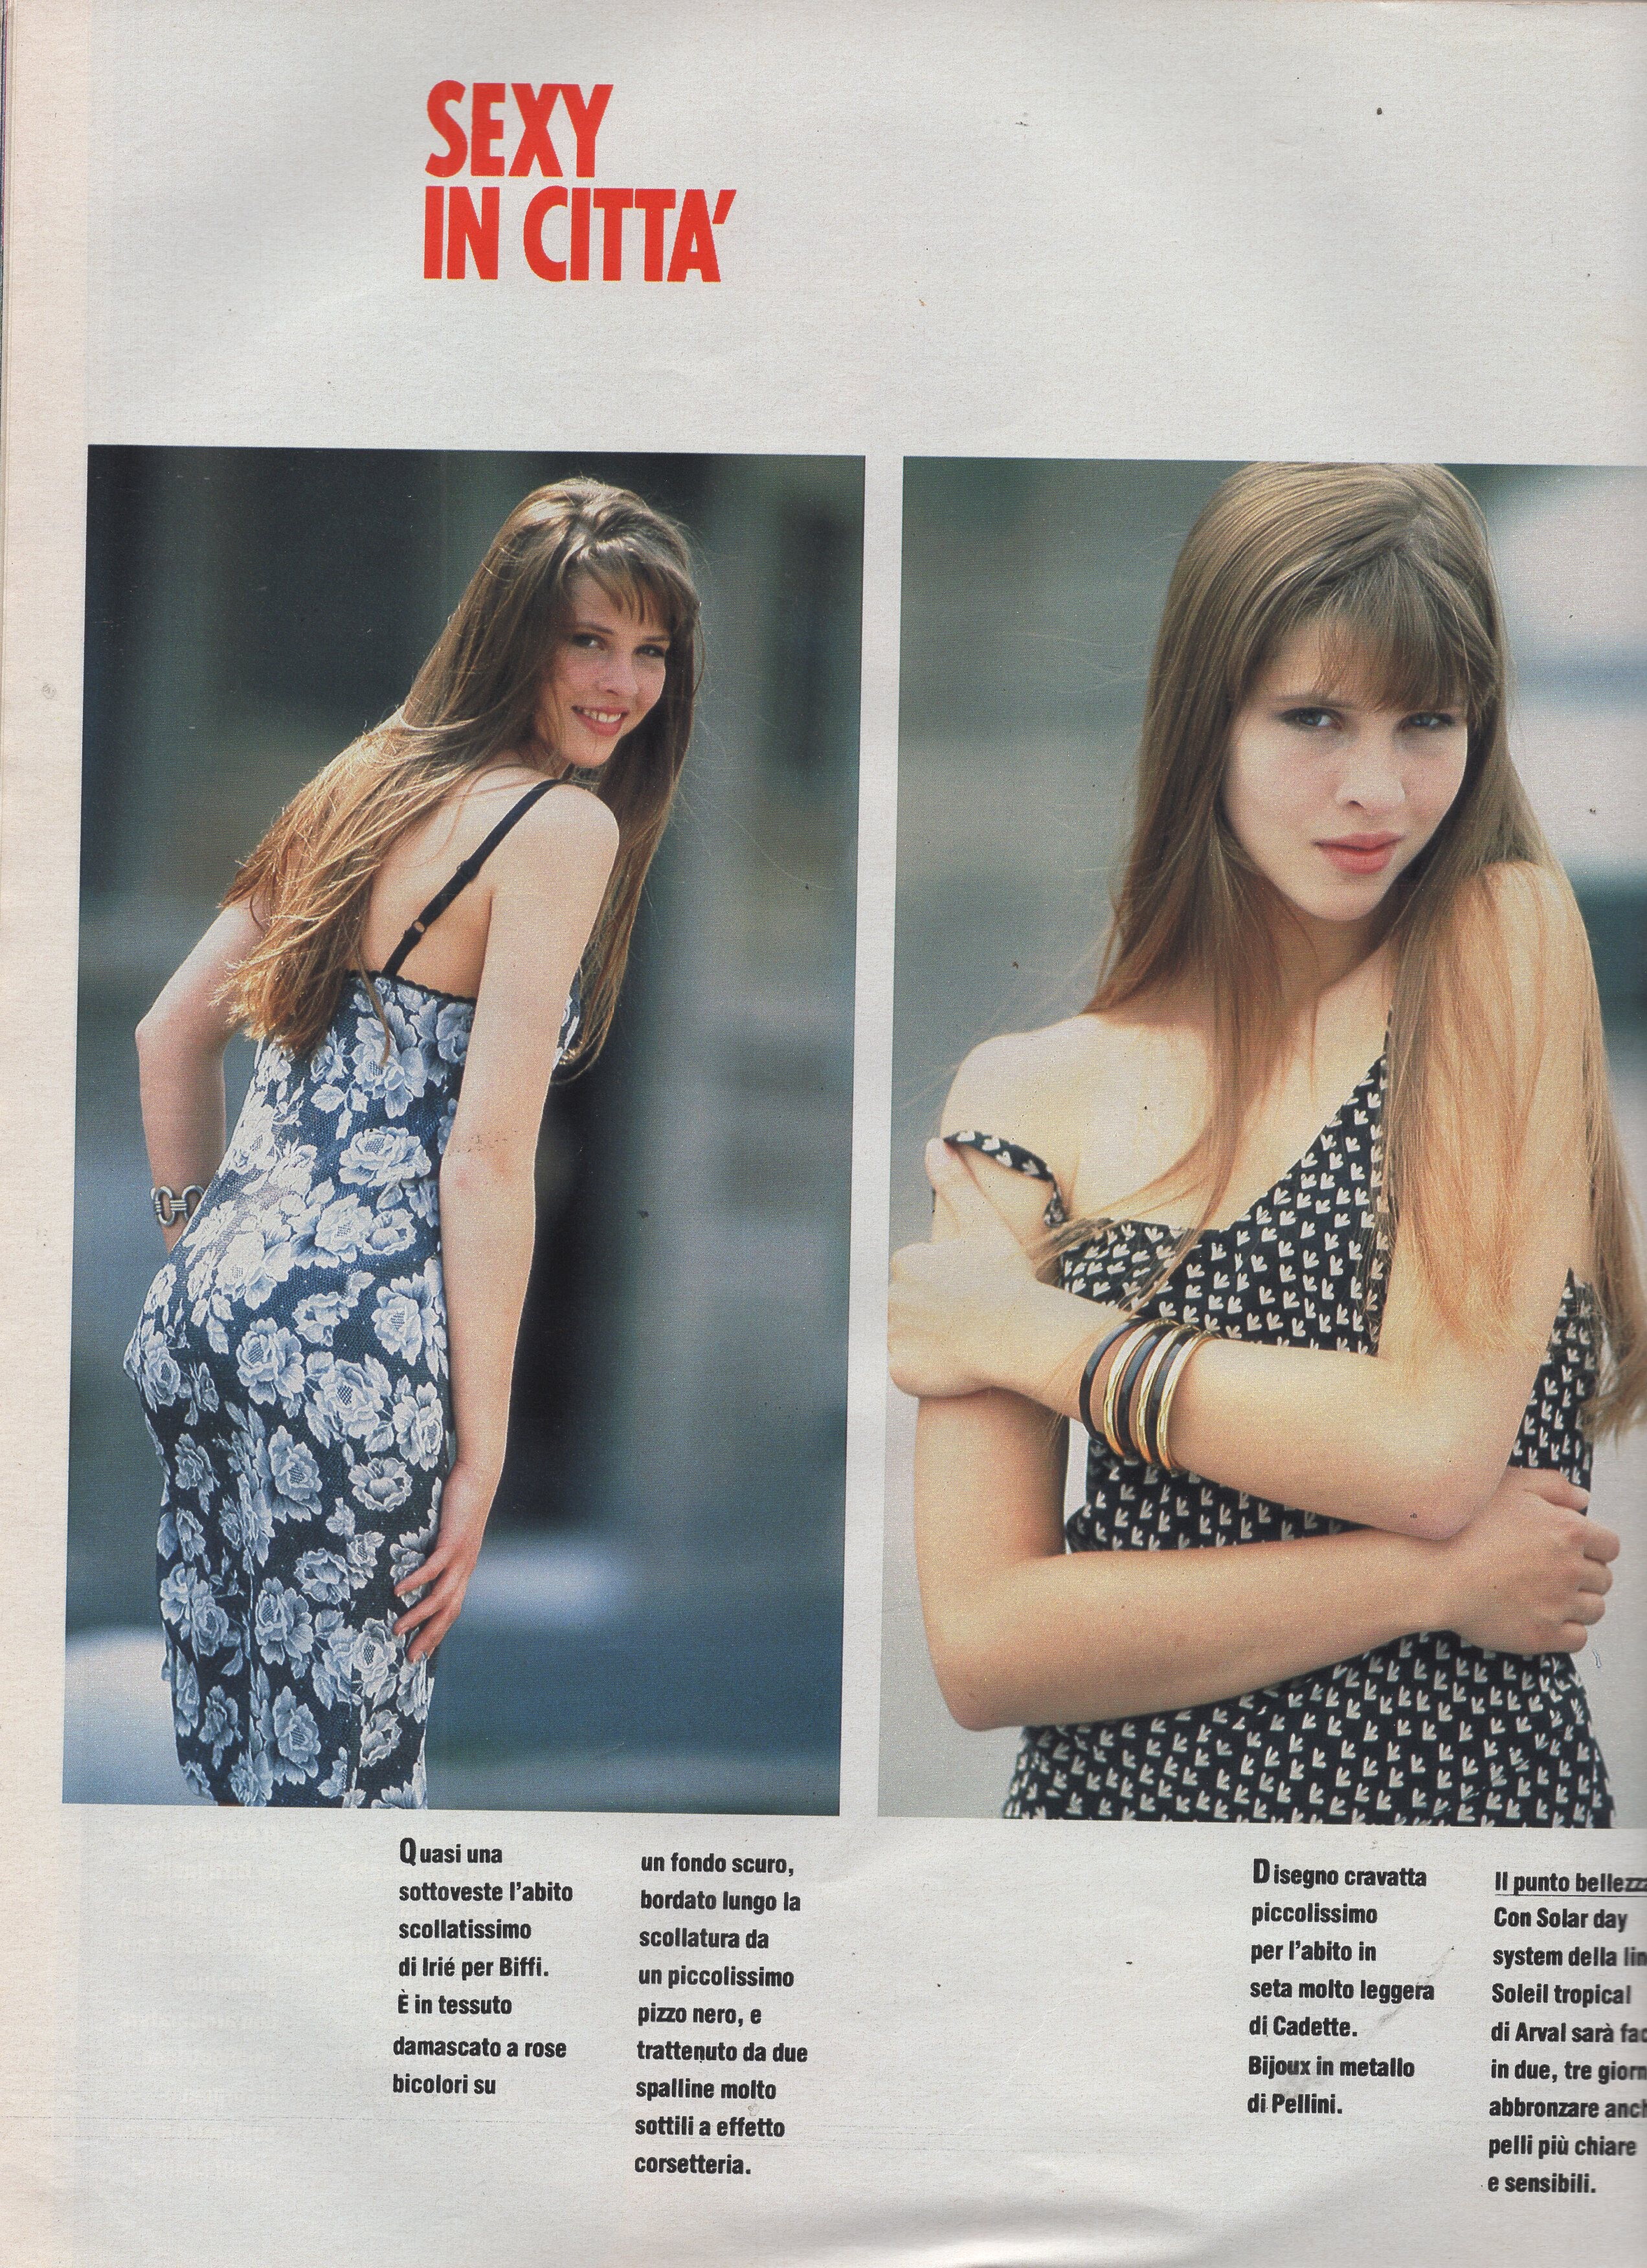 Grazia magazine models - Page 85 - General Discussion - Bellazon